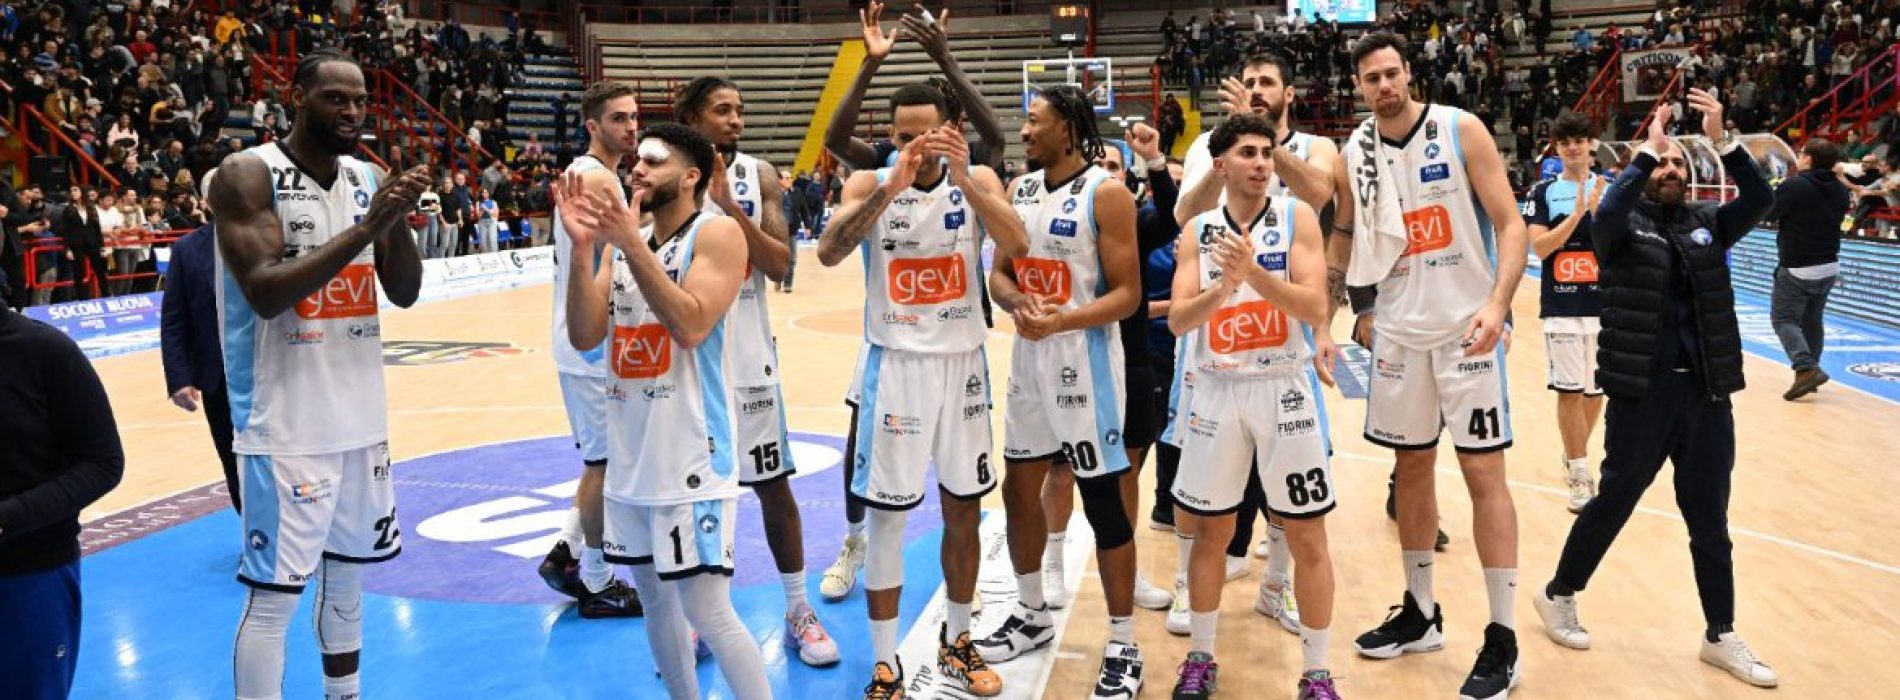 La Gevi Napoli Basket trionfa sull’Olimpia Milano: gioia incontenibile al Palabarbuto!